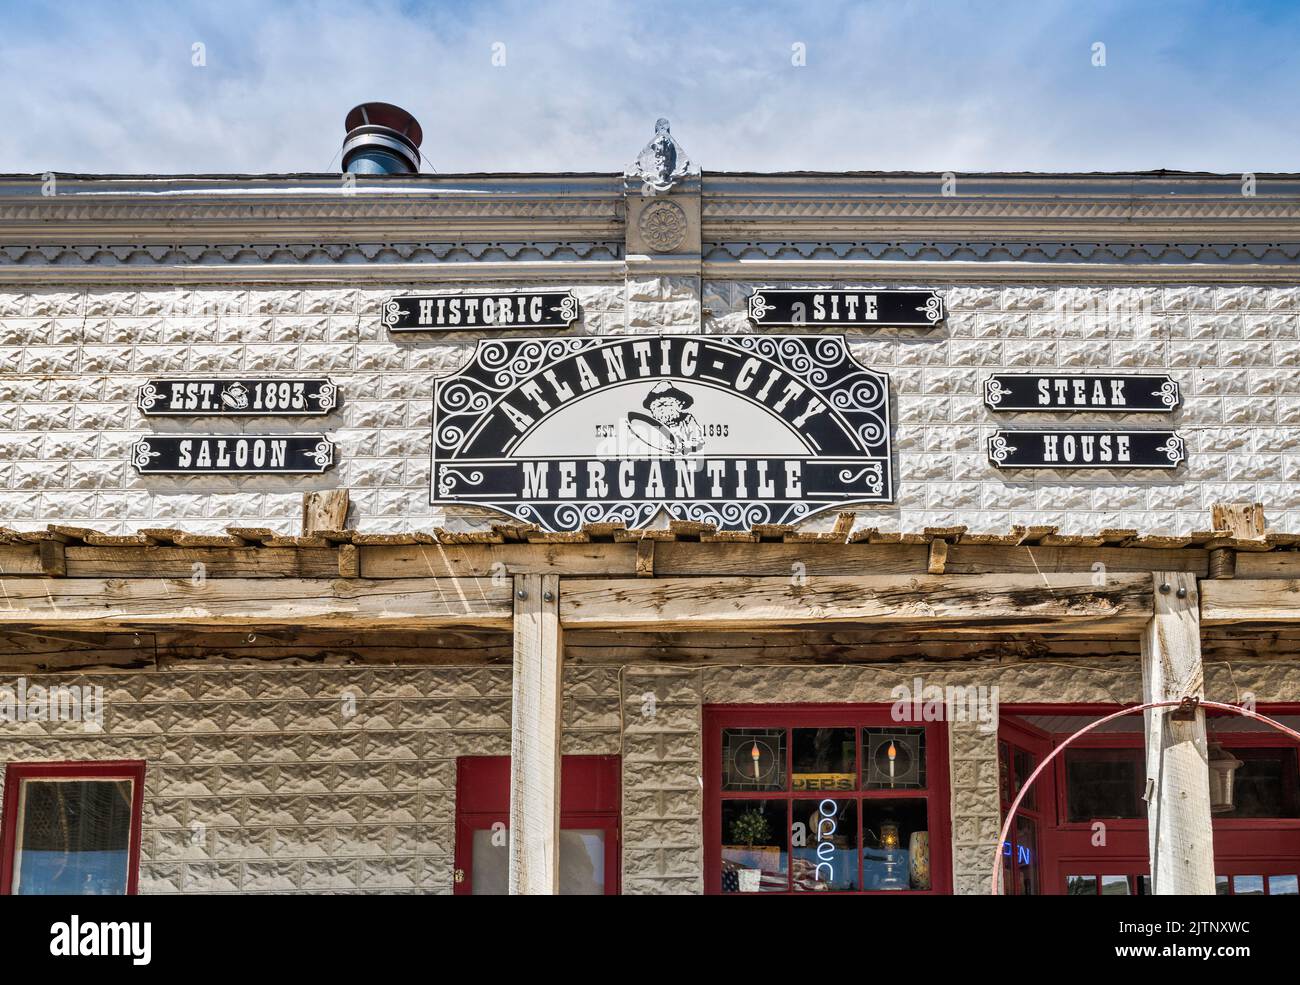 Cartel de la tienda en el edificio frontal falso, Giessler Store y la oficina de correos alias Atlantic City Mercantile, 1893, ahora restaurante especializado en bistecs, en Atlantic City, Wyoming, EE.UU Foto de stock